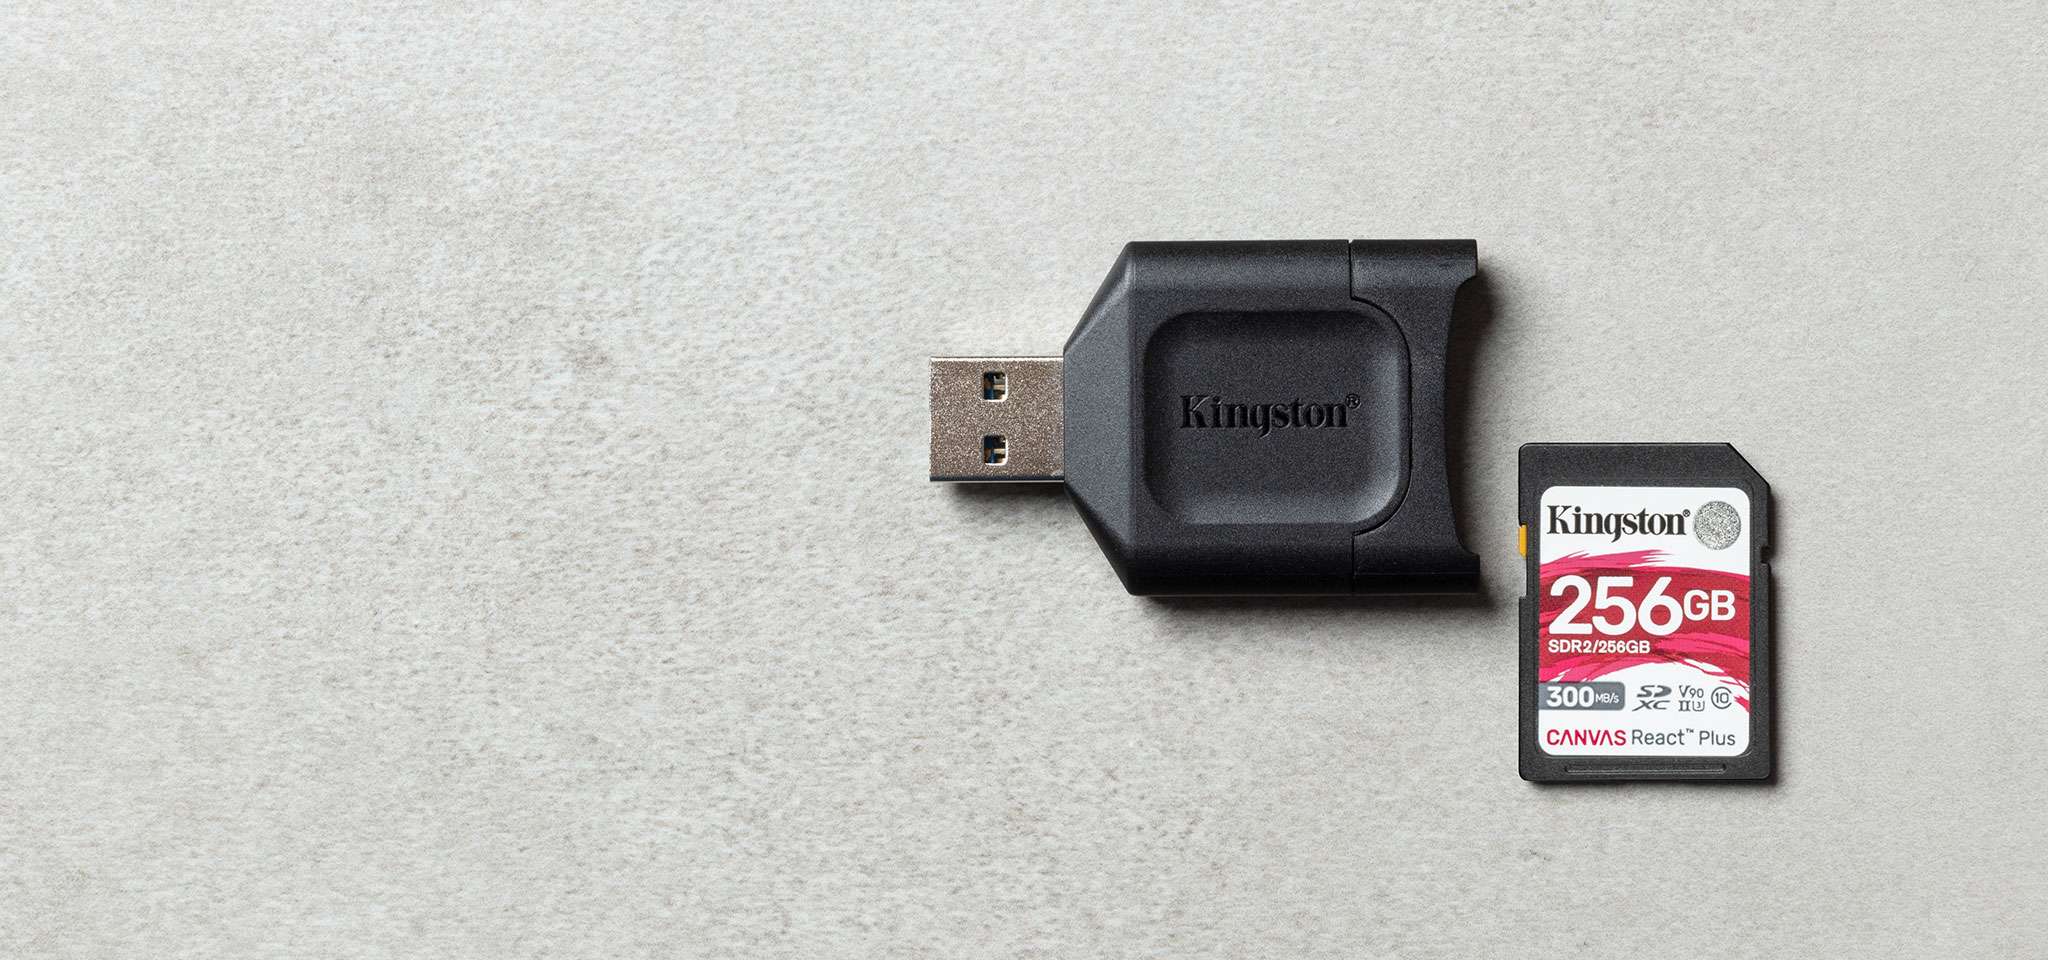 MobileLite Plus SD カードリーダーが灰色の表面上の Canvas React Plus SD カードの隣に置かれている